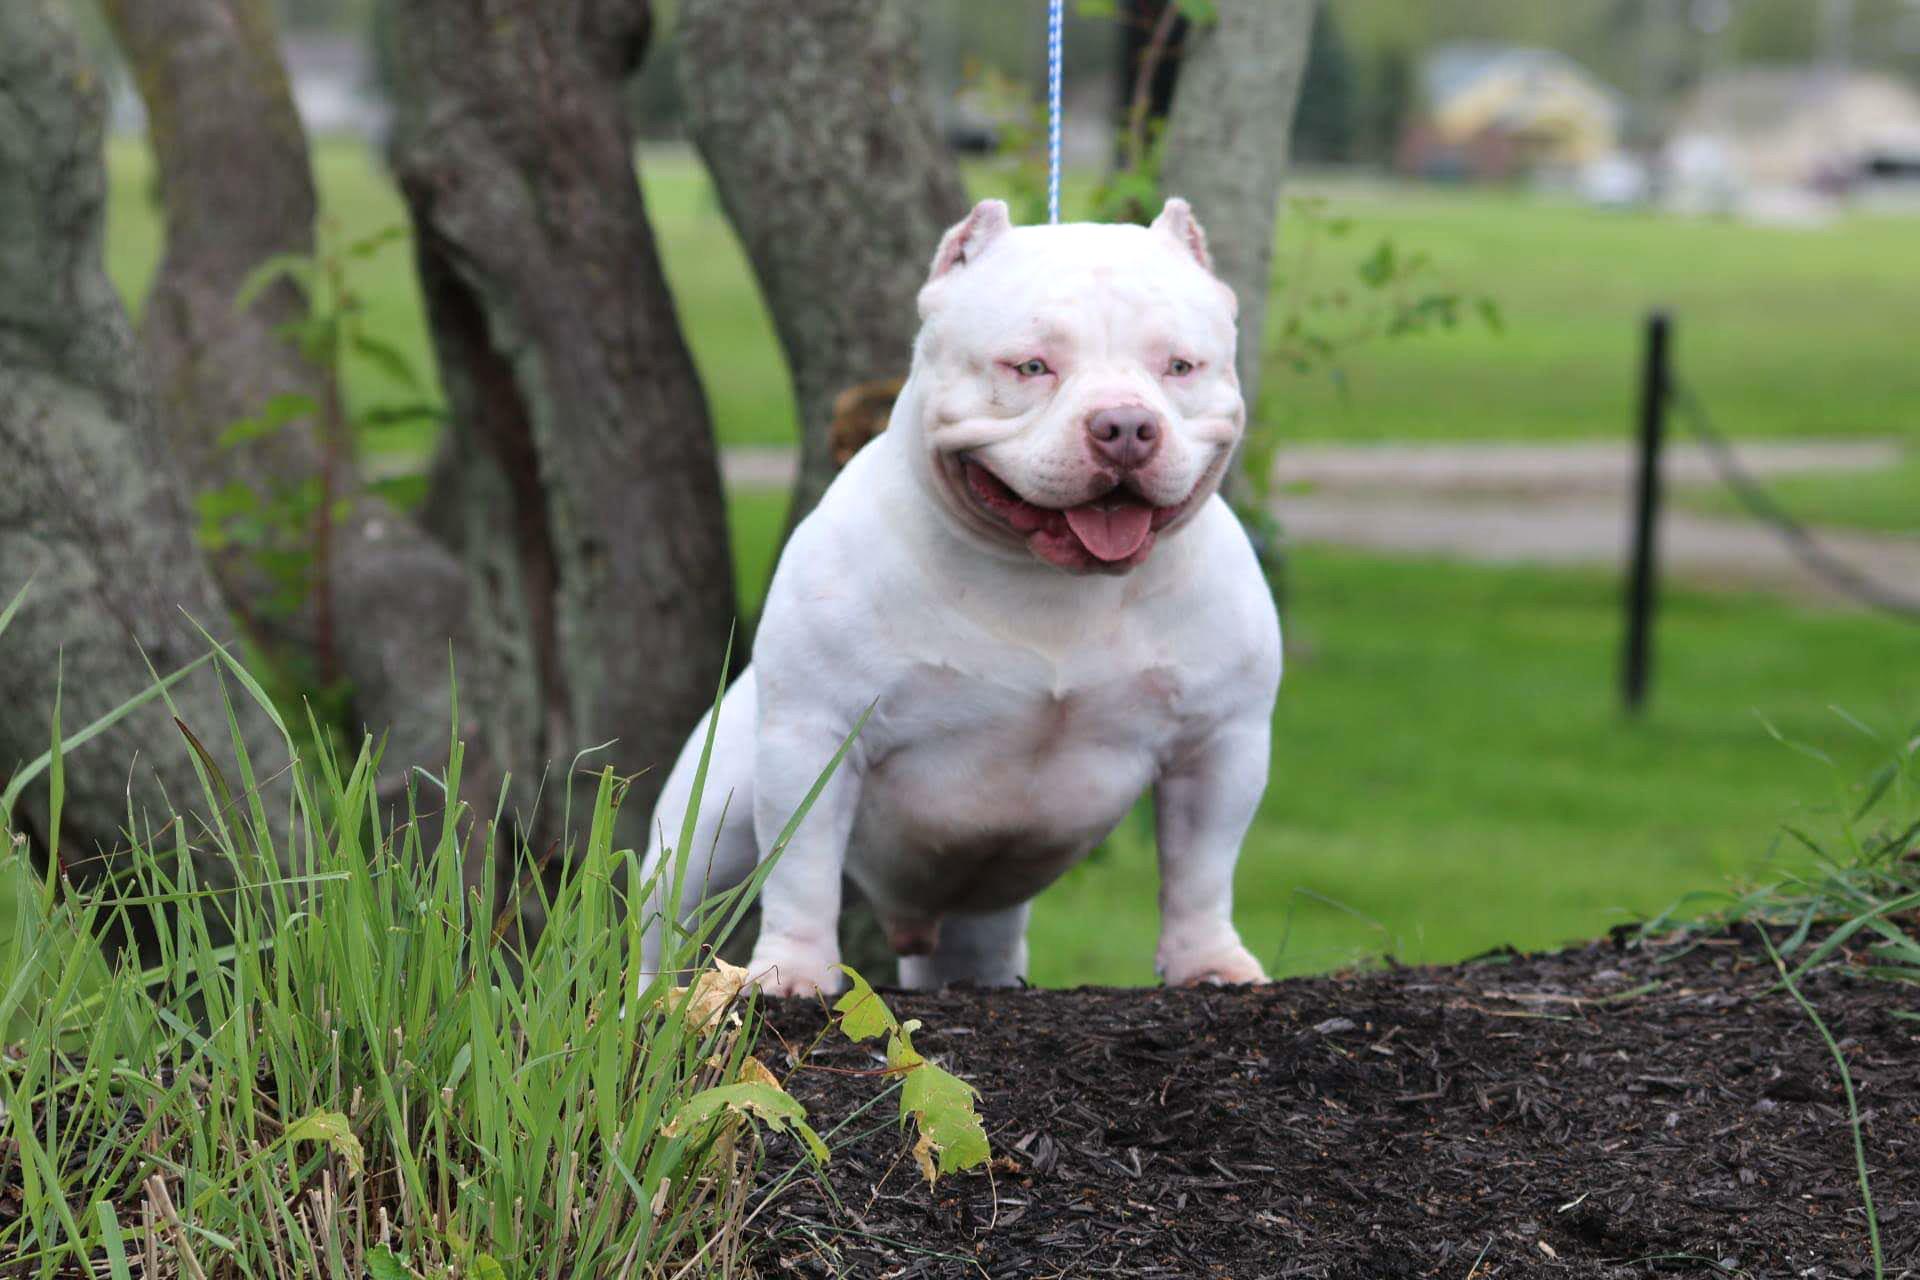 Bulldog giống như anh em sinh đôi với Pitbull, nhưng rất thân thiện - 30